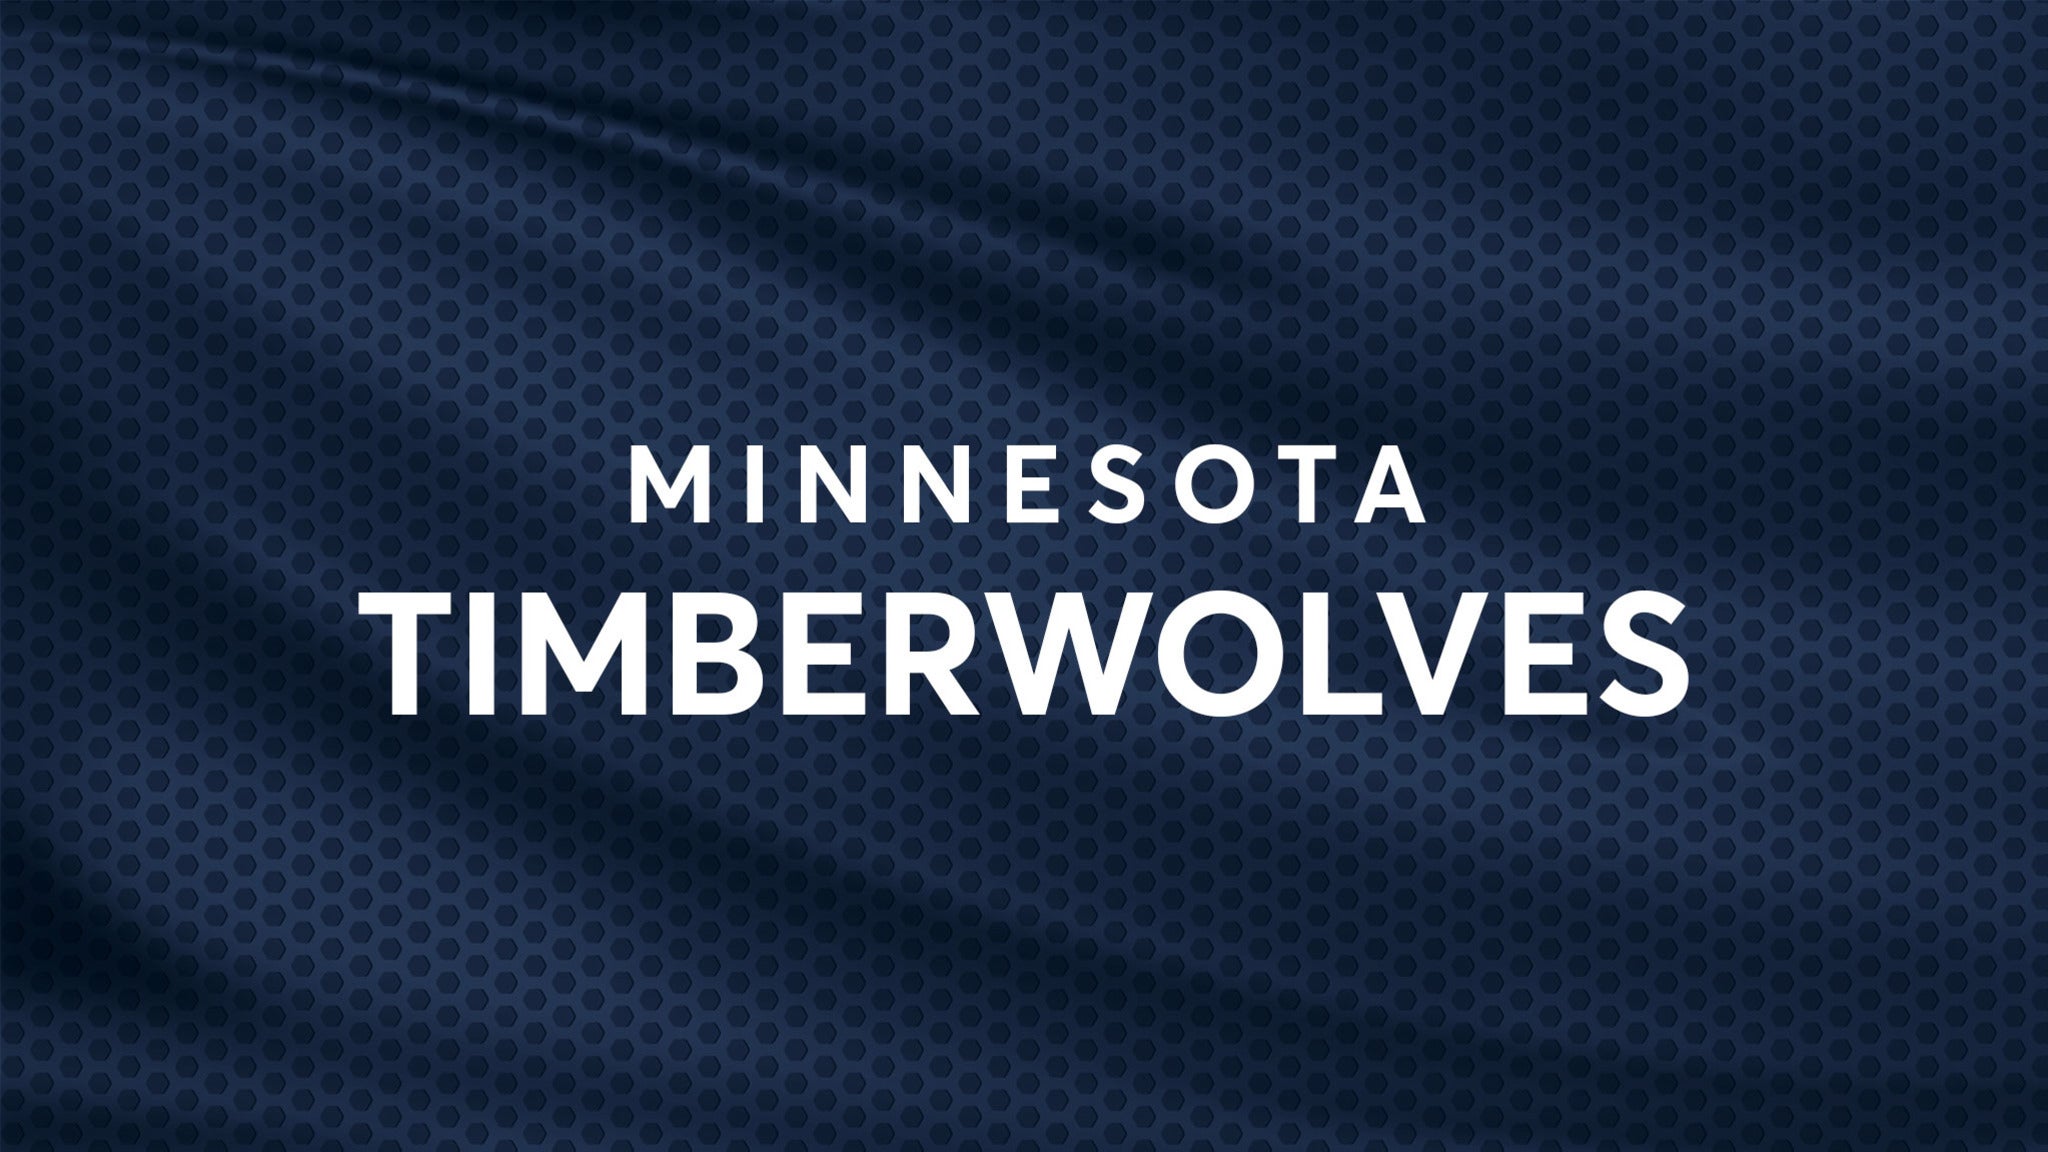 Minnesota Timberwolves vs. Brooklyn Nets